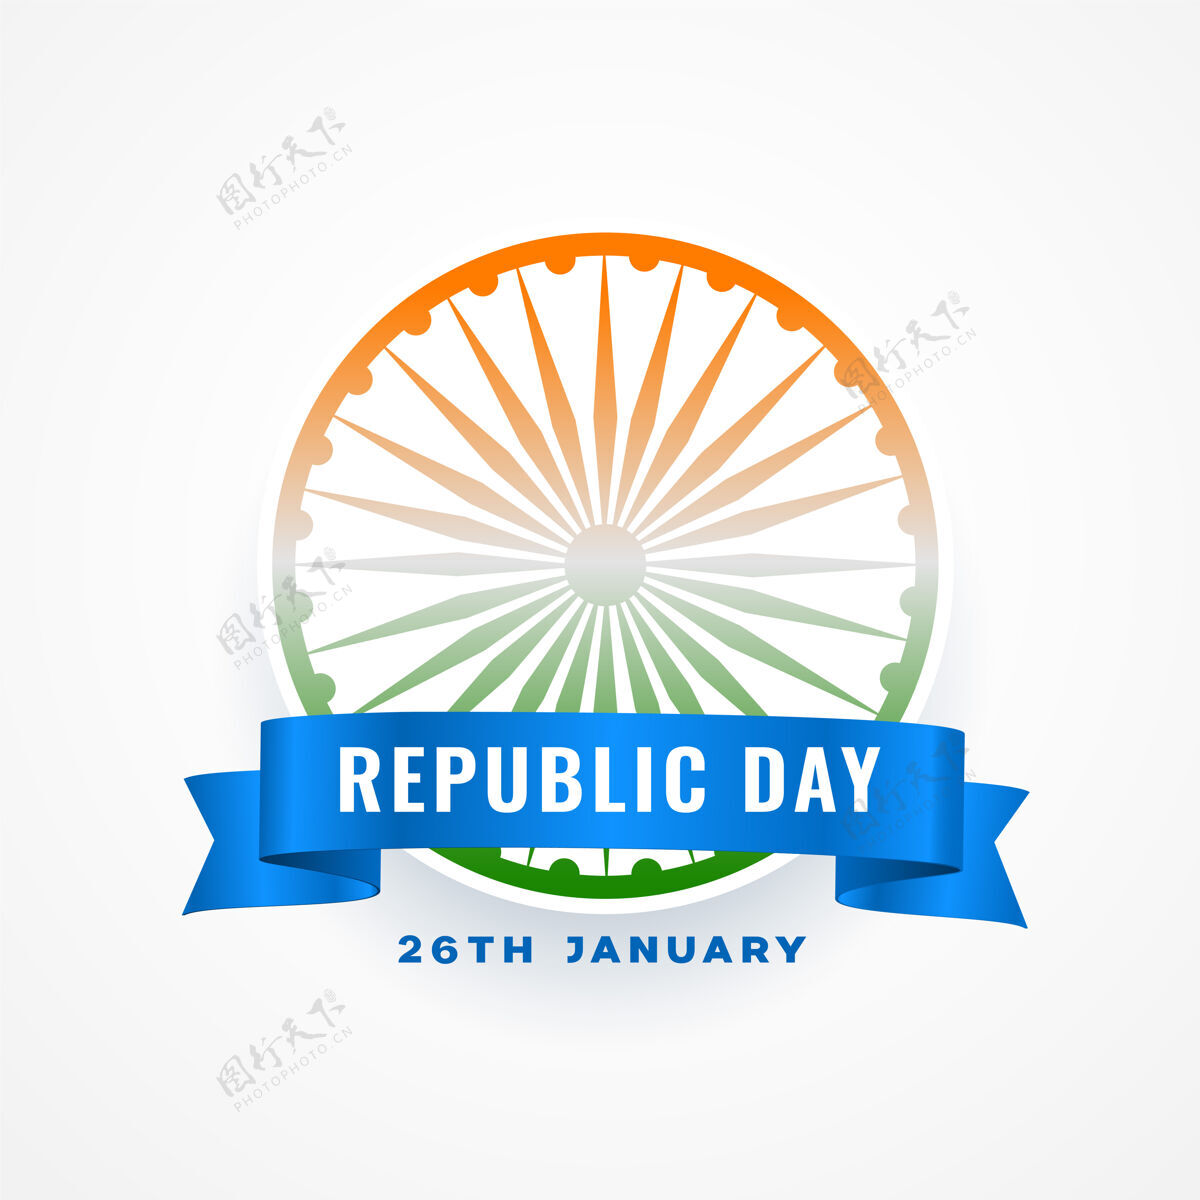 爱国印度共和国日阿育王脉轮祝福卡日独立印度